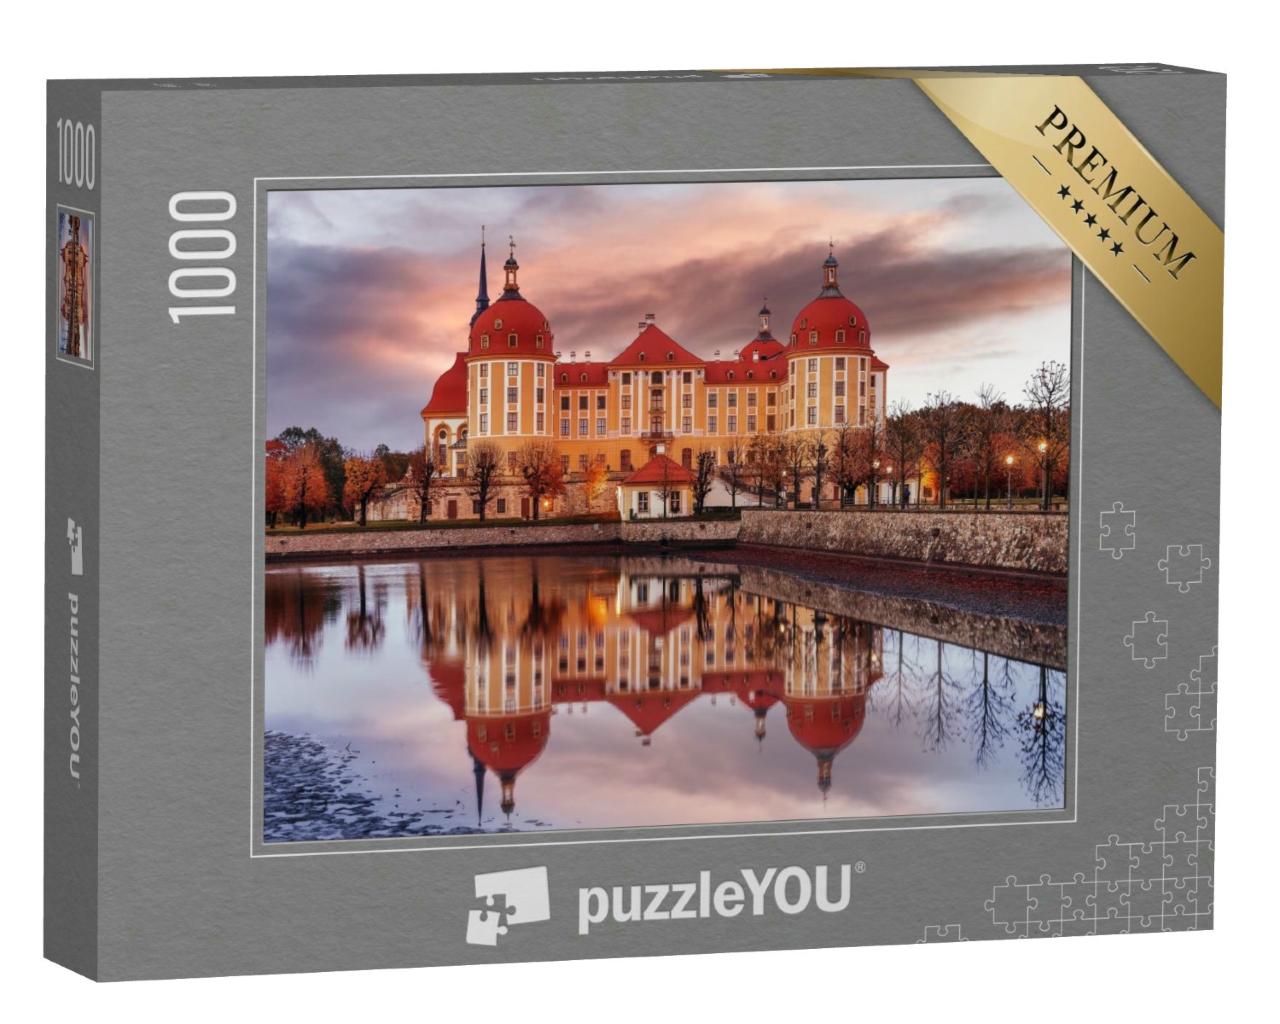 Puzzle 1000 Teile „Wunderbare malerische Szene mit dramatischem Himmel, Schloss Moritzburg, Sachsen“